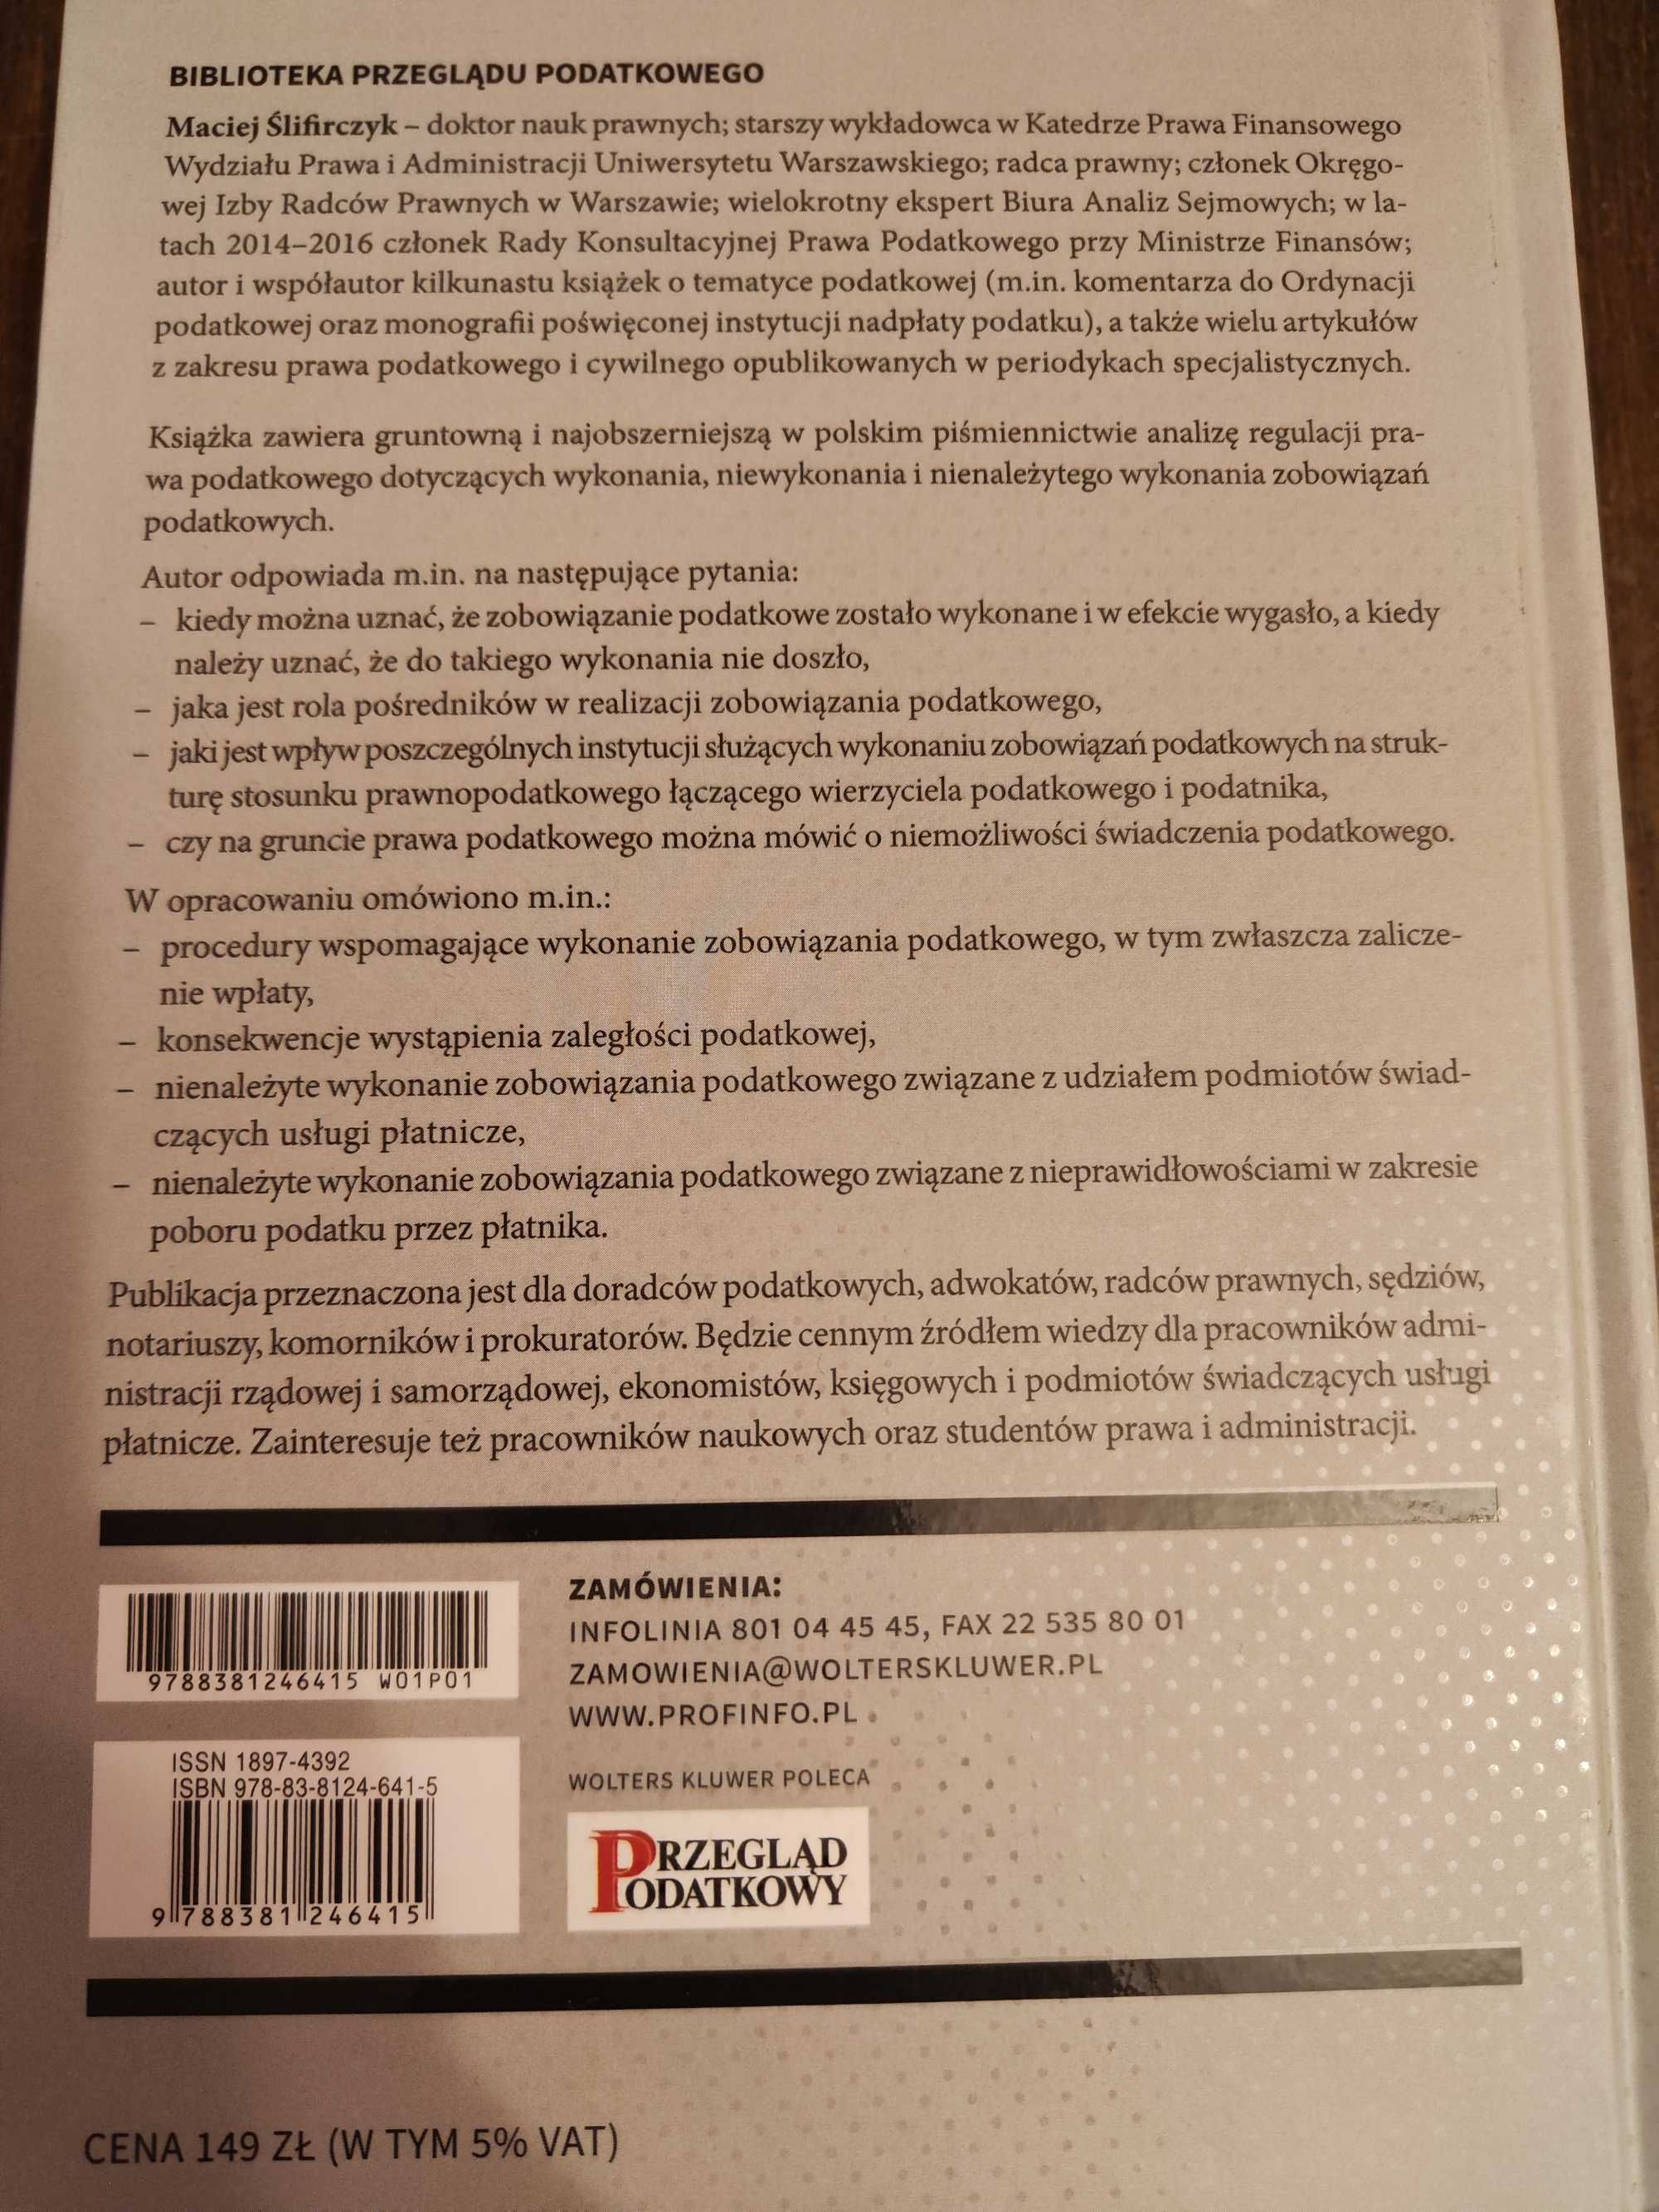 Maciej Ślifirczyk - wykonanie zobowiązania podatkowego (monografia)